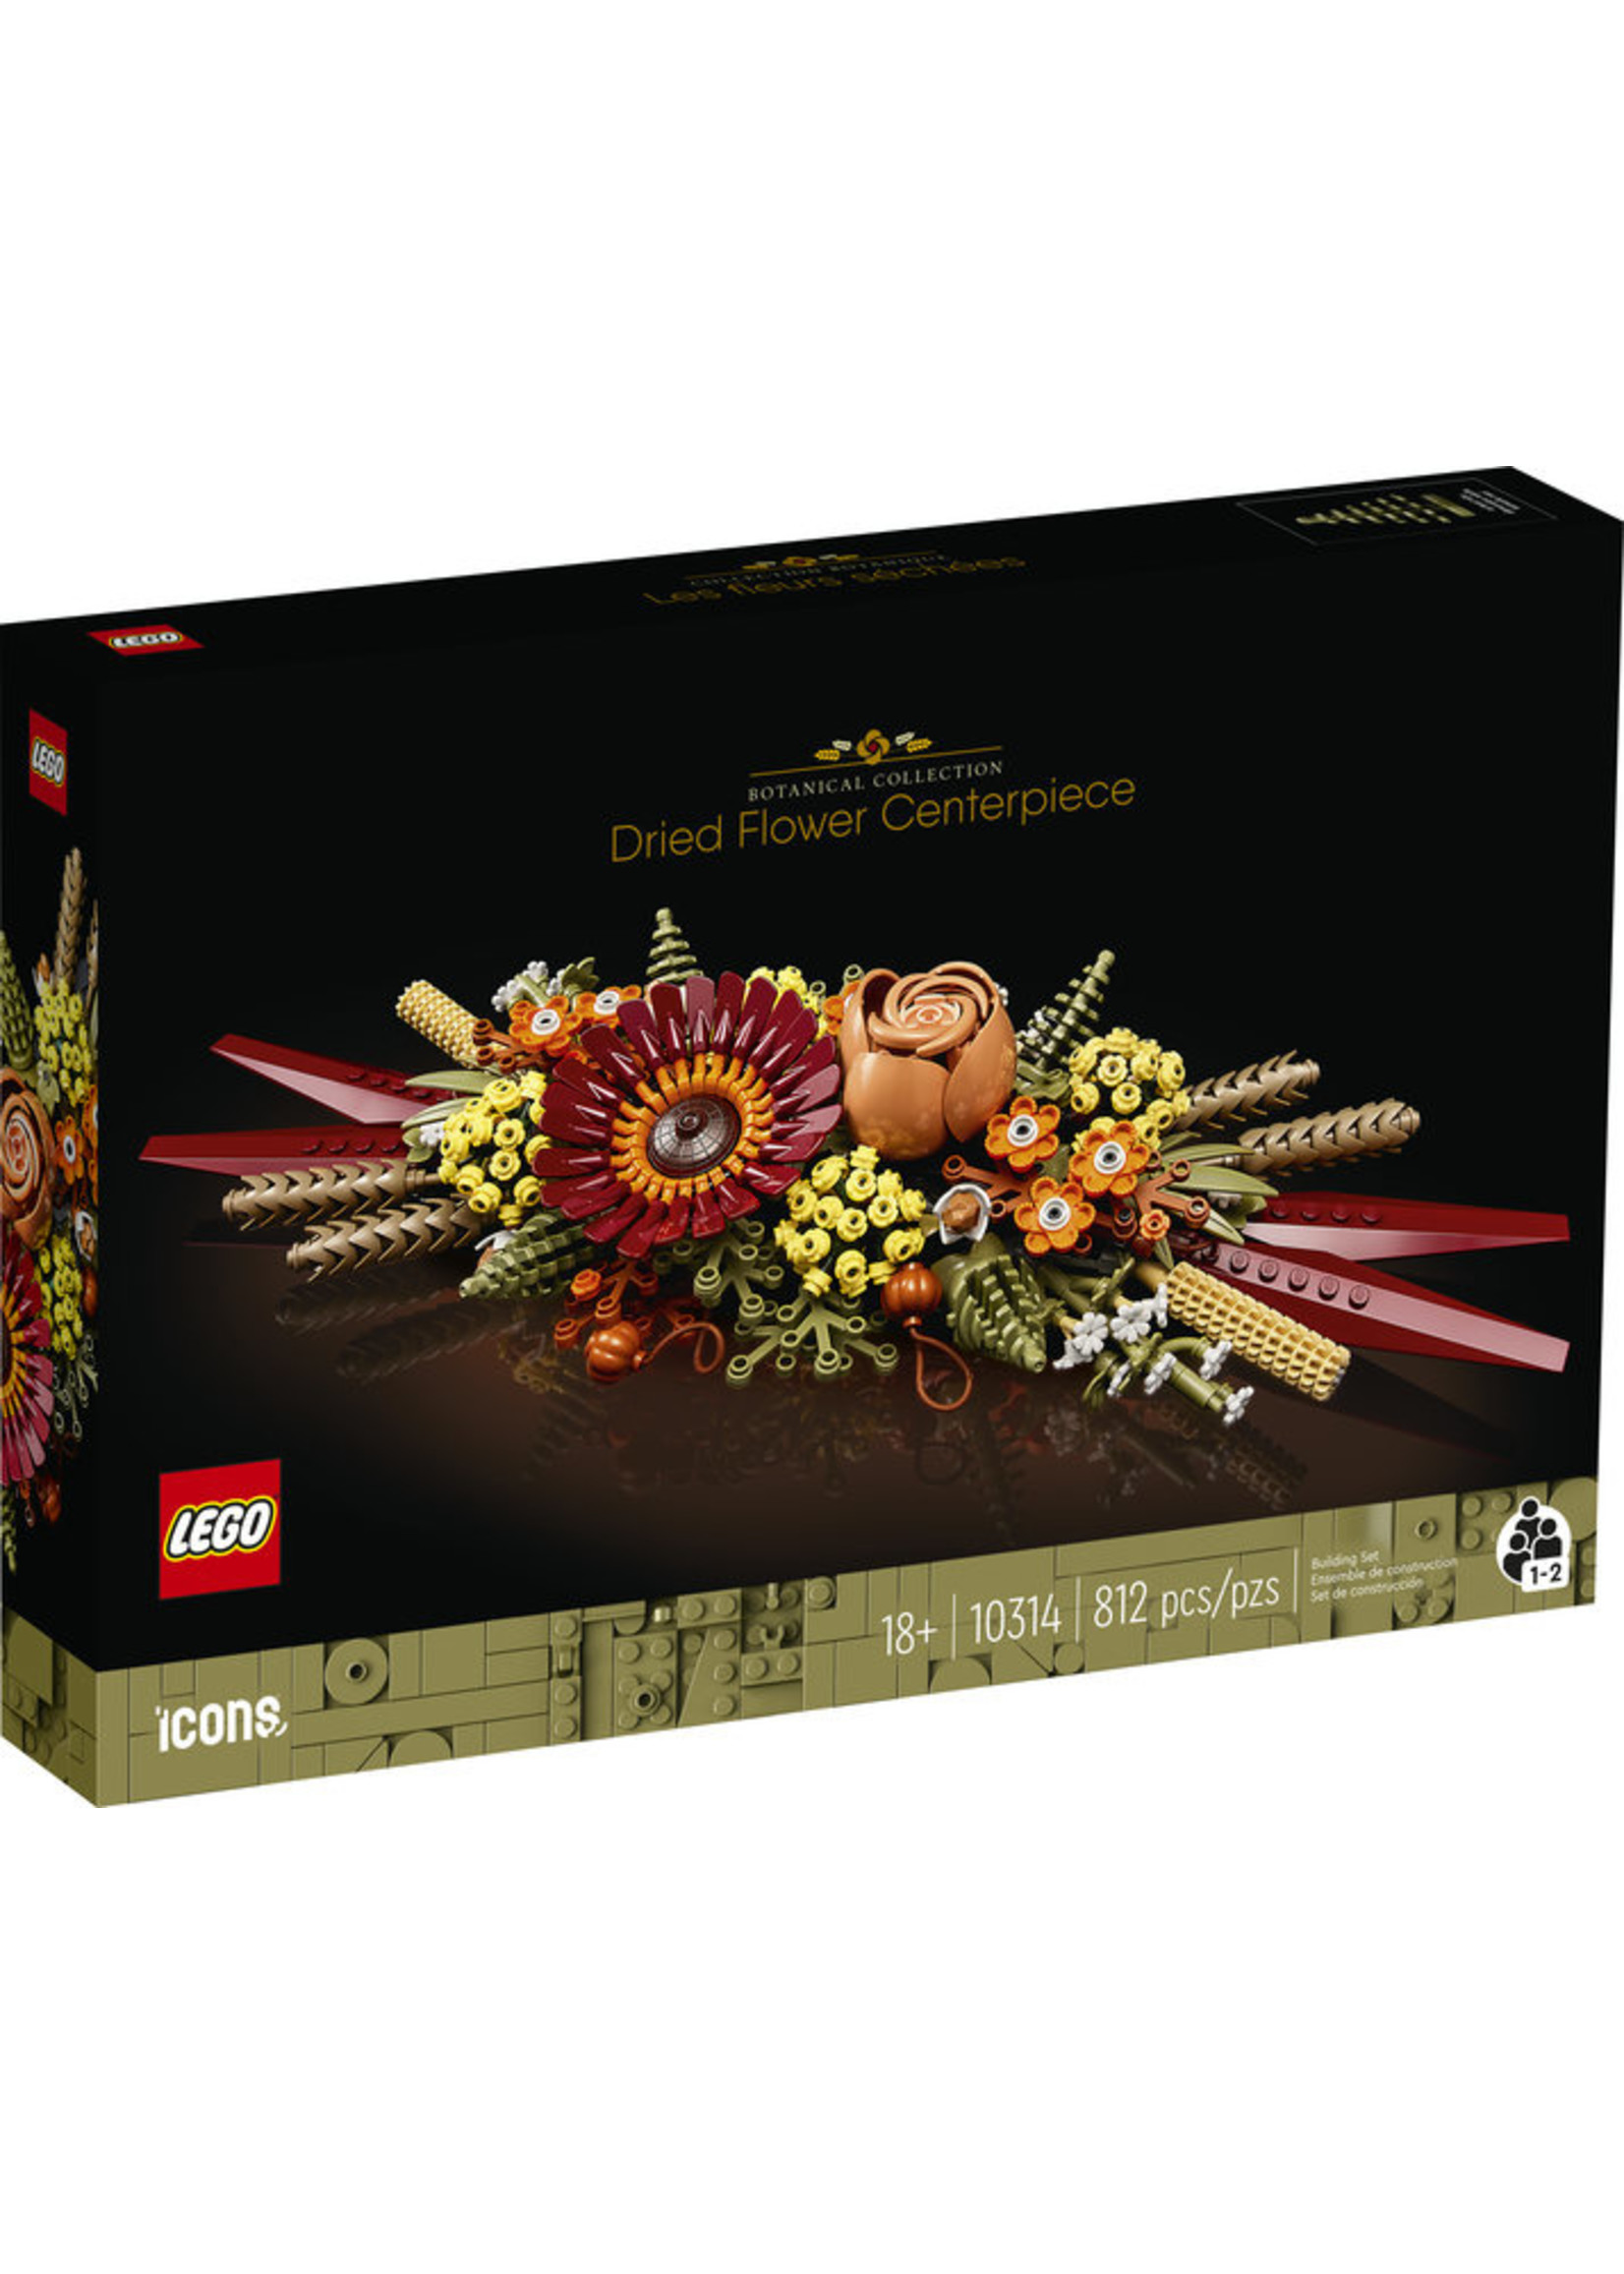 LEGO 10314 - Dried Flower Centerpiece